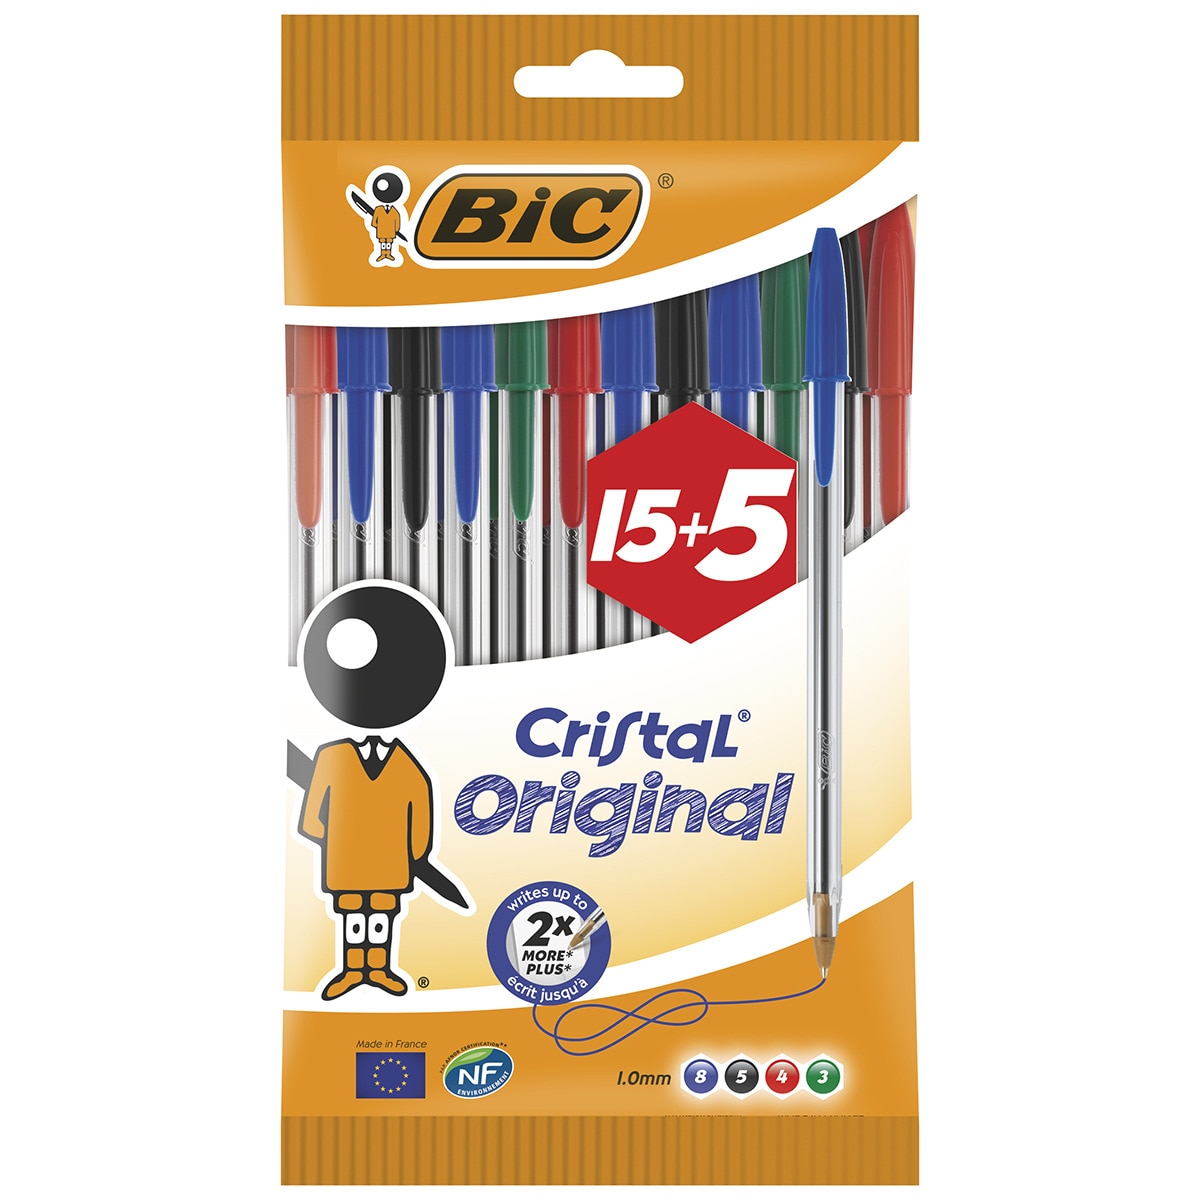 Blíster Bolígrafos Bic Cristal 15 + 5 gratis